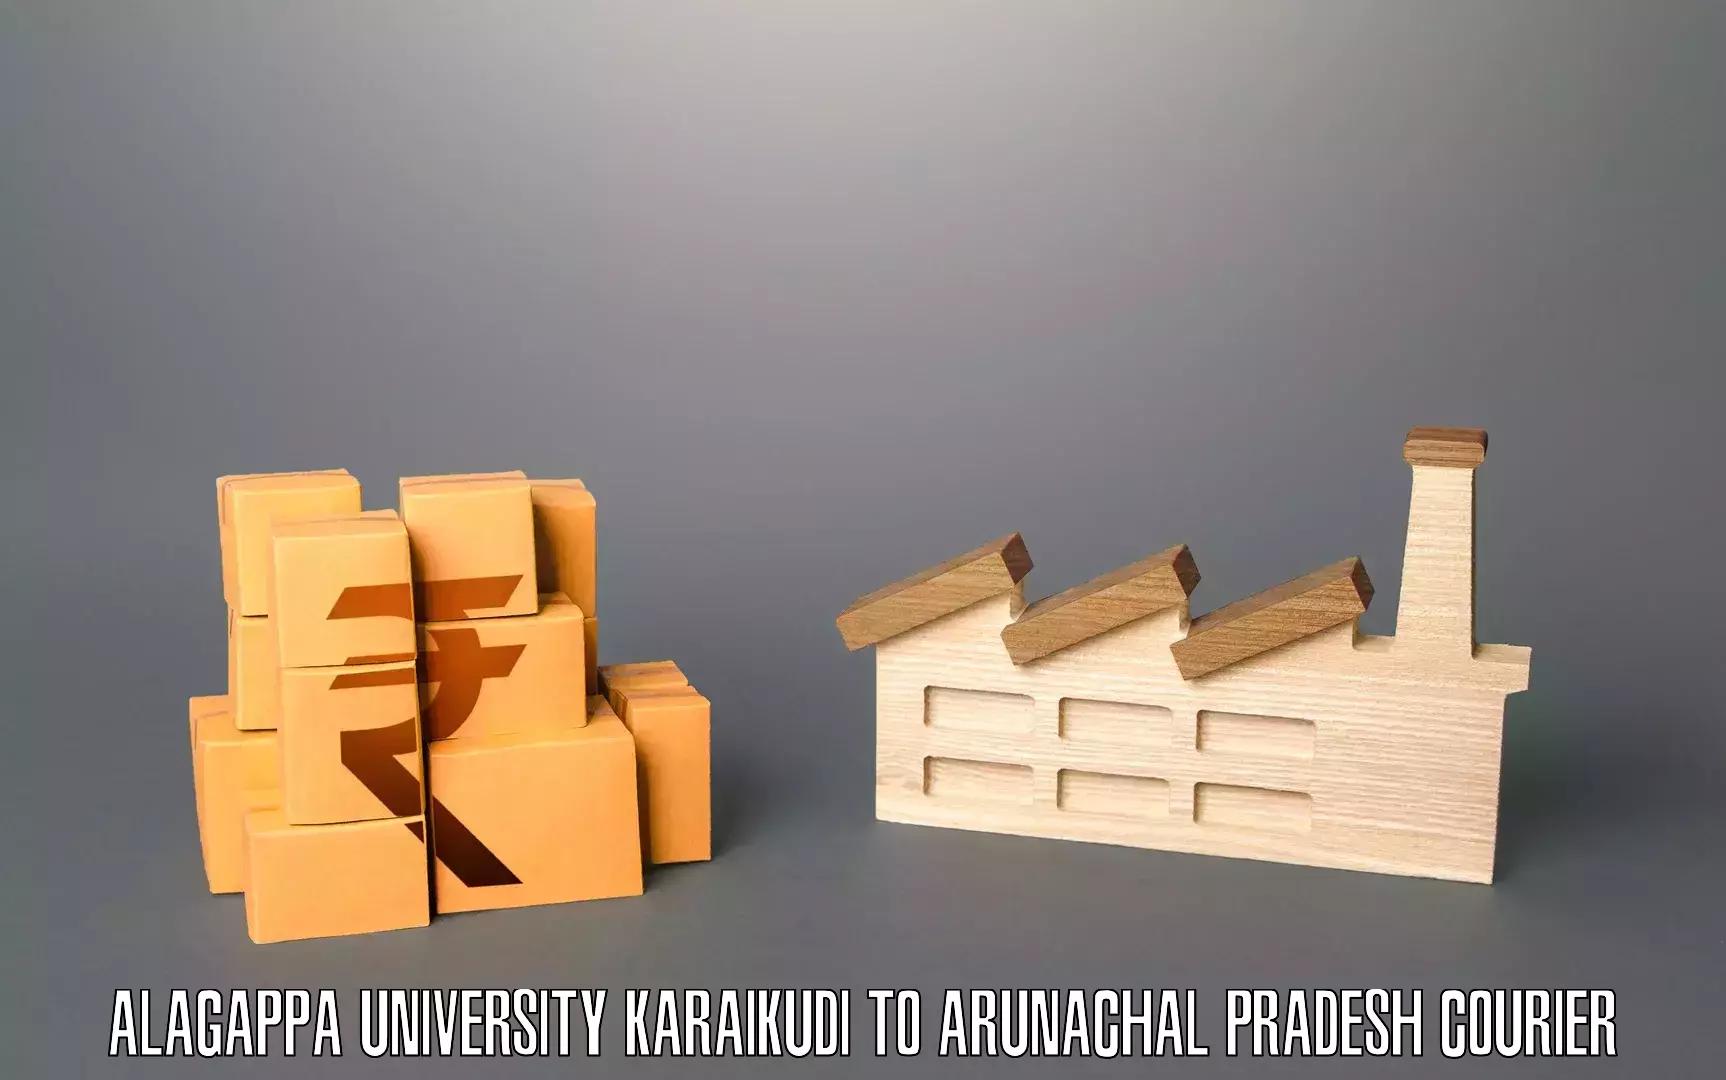 Furniture relocation experts Alagappa University Karaikudi to Longding